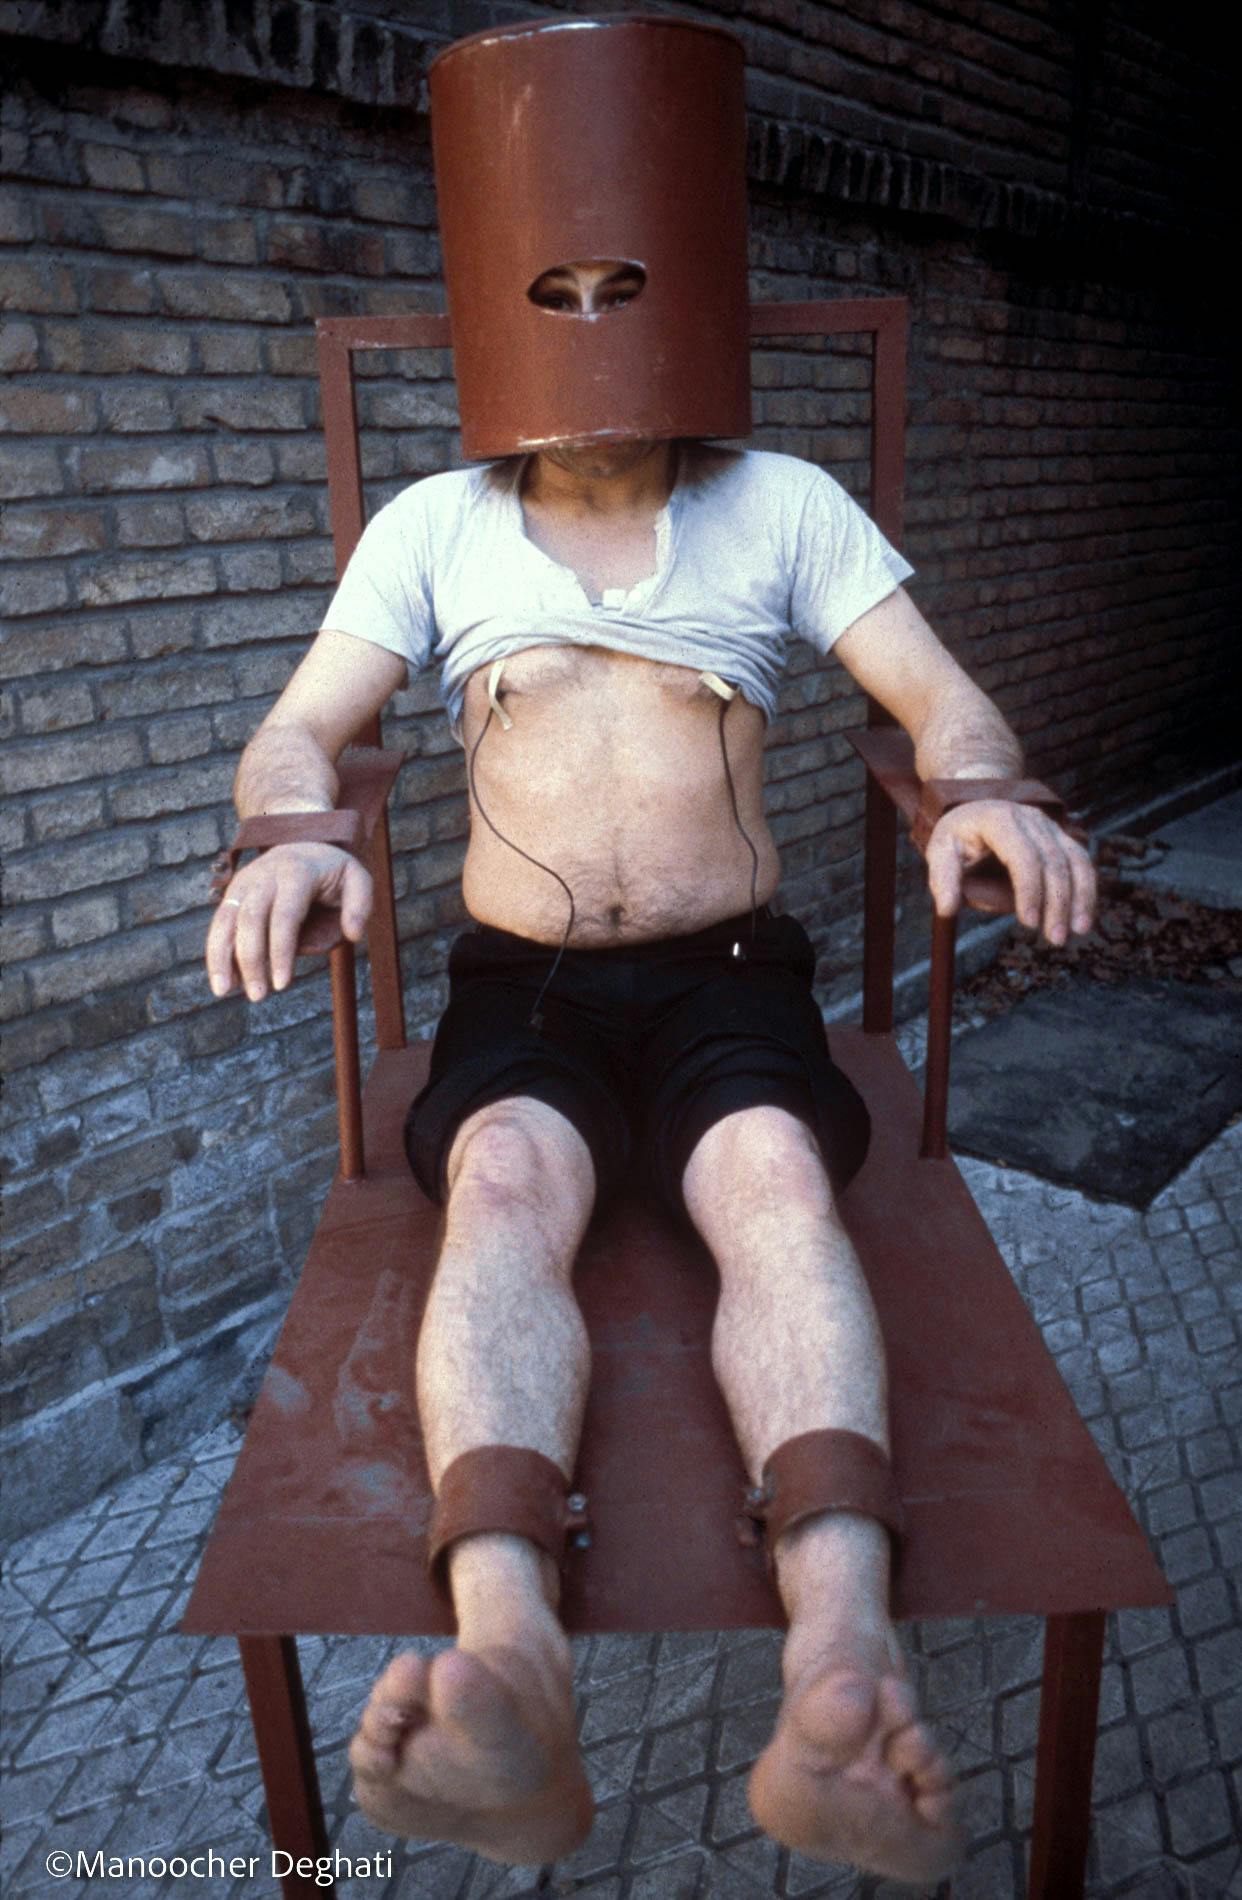 دستگاه آپولو برای شکنجه در ساواک - عکس: منوچهر دقتی